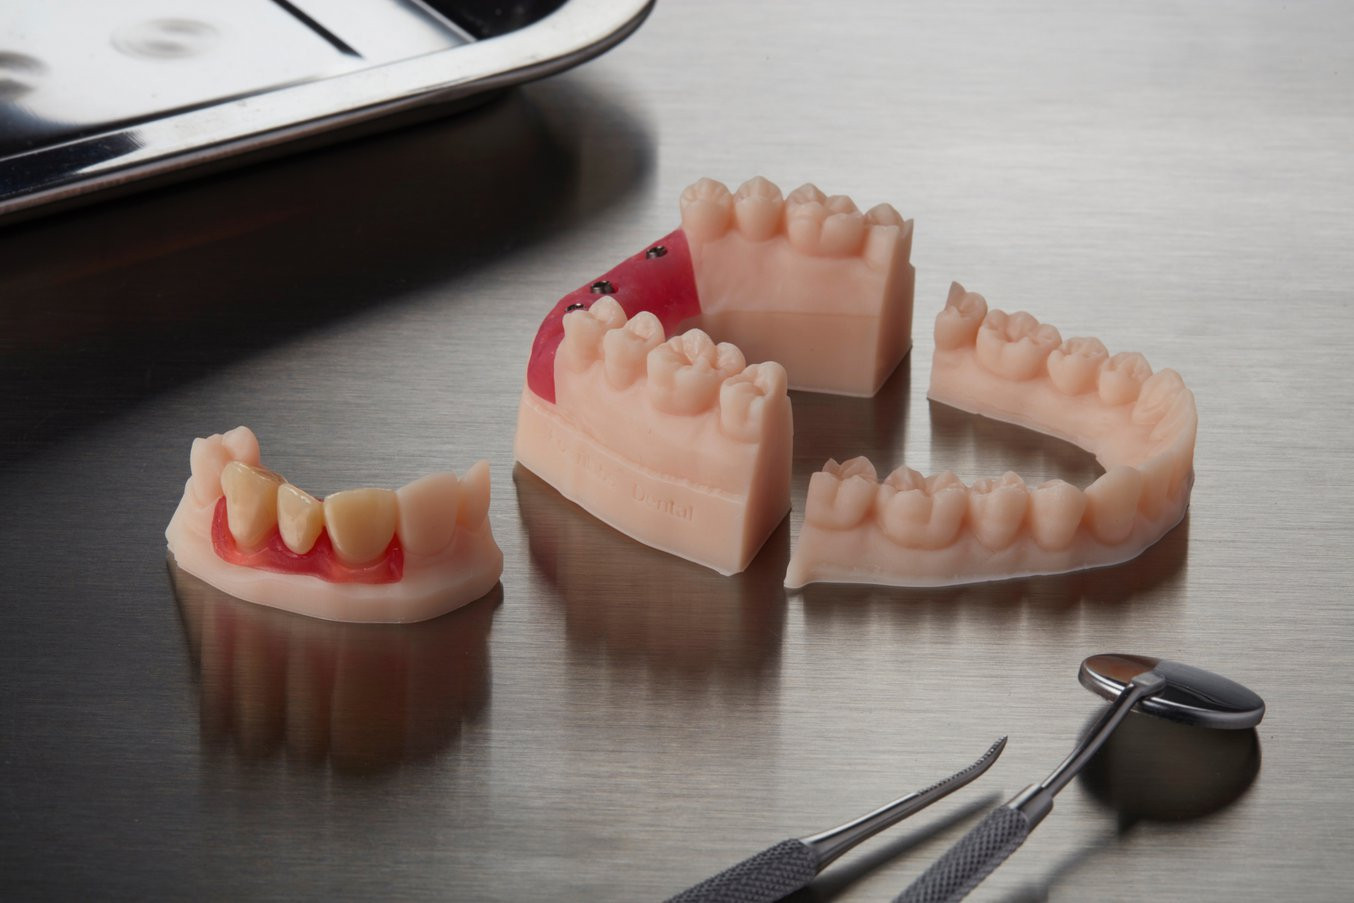 نمونه های اورتودنسی پرینت شده از جنس رزین دندان پزشکی